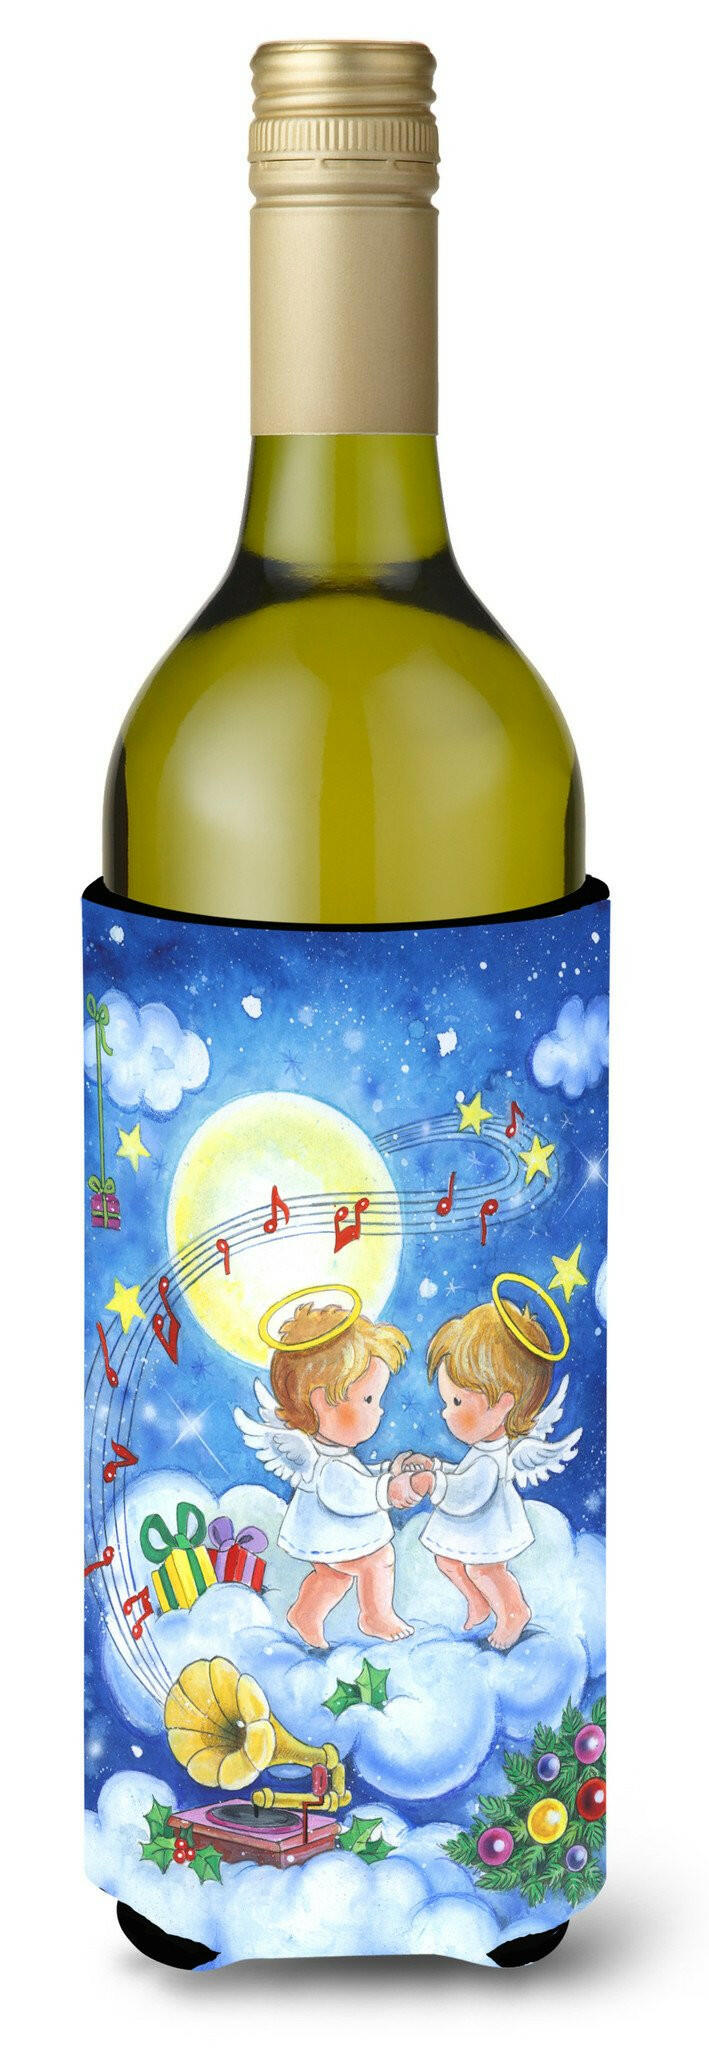 Angels Making Music Together Wine Bottle Beverage Insulator Hugger APH3790LITERK by Caroline's Treasures